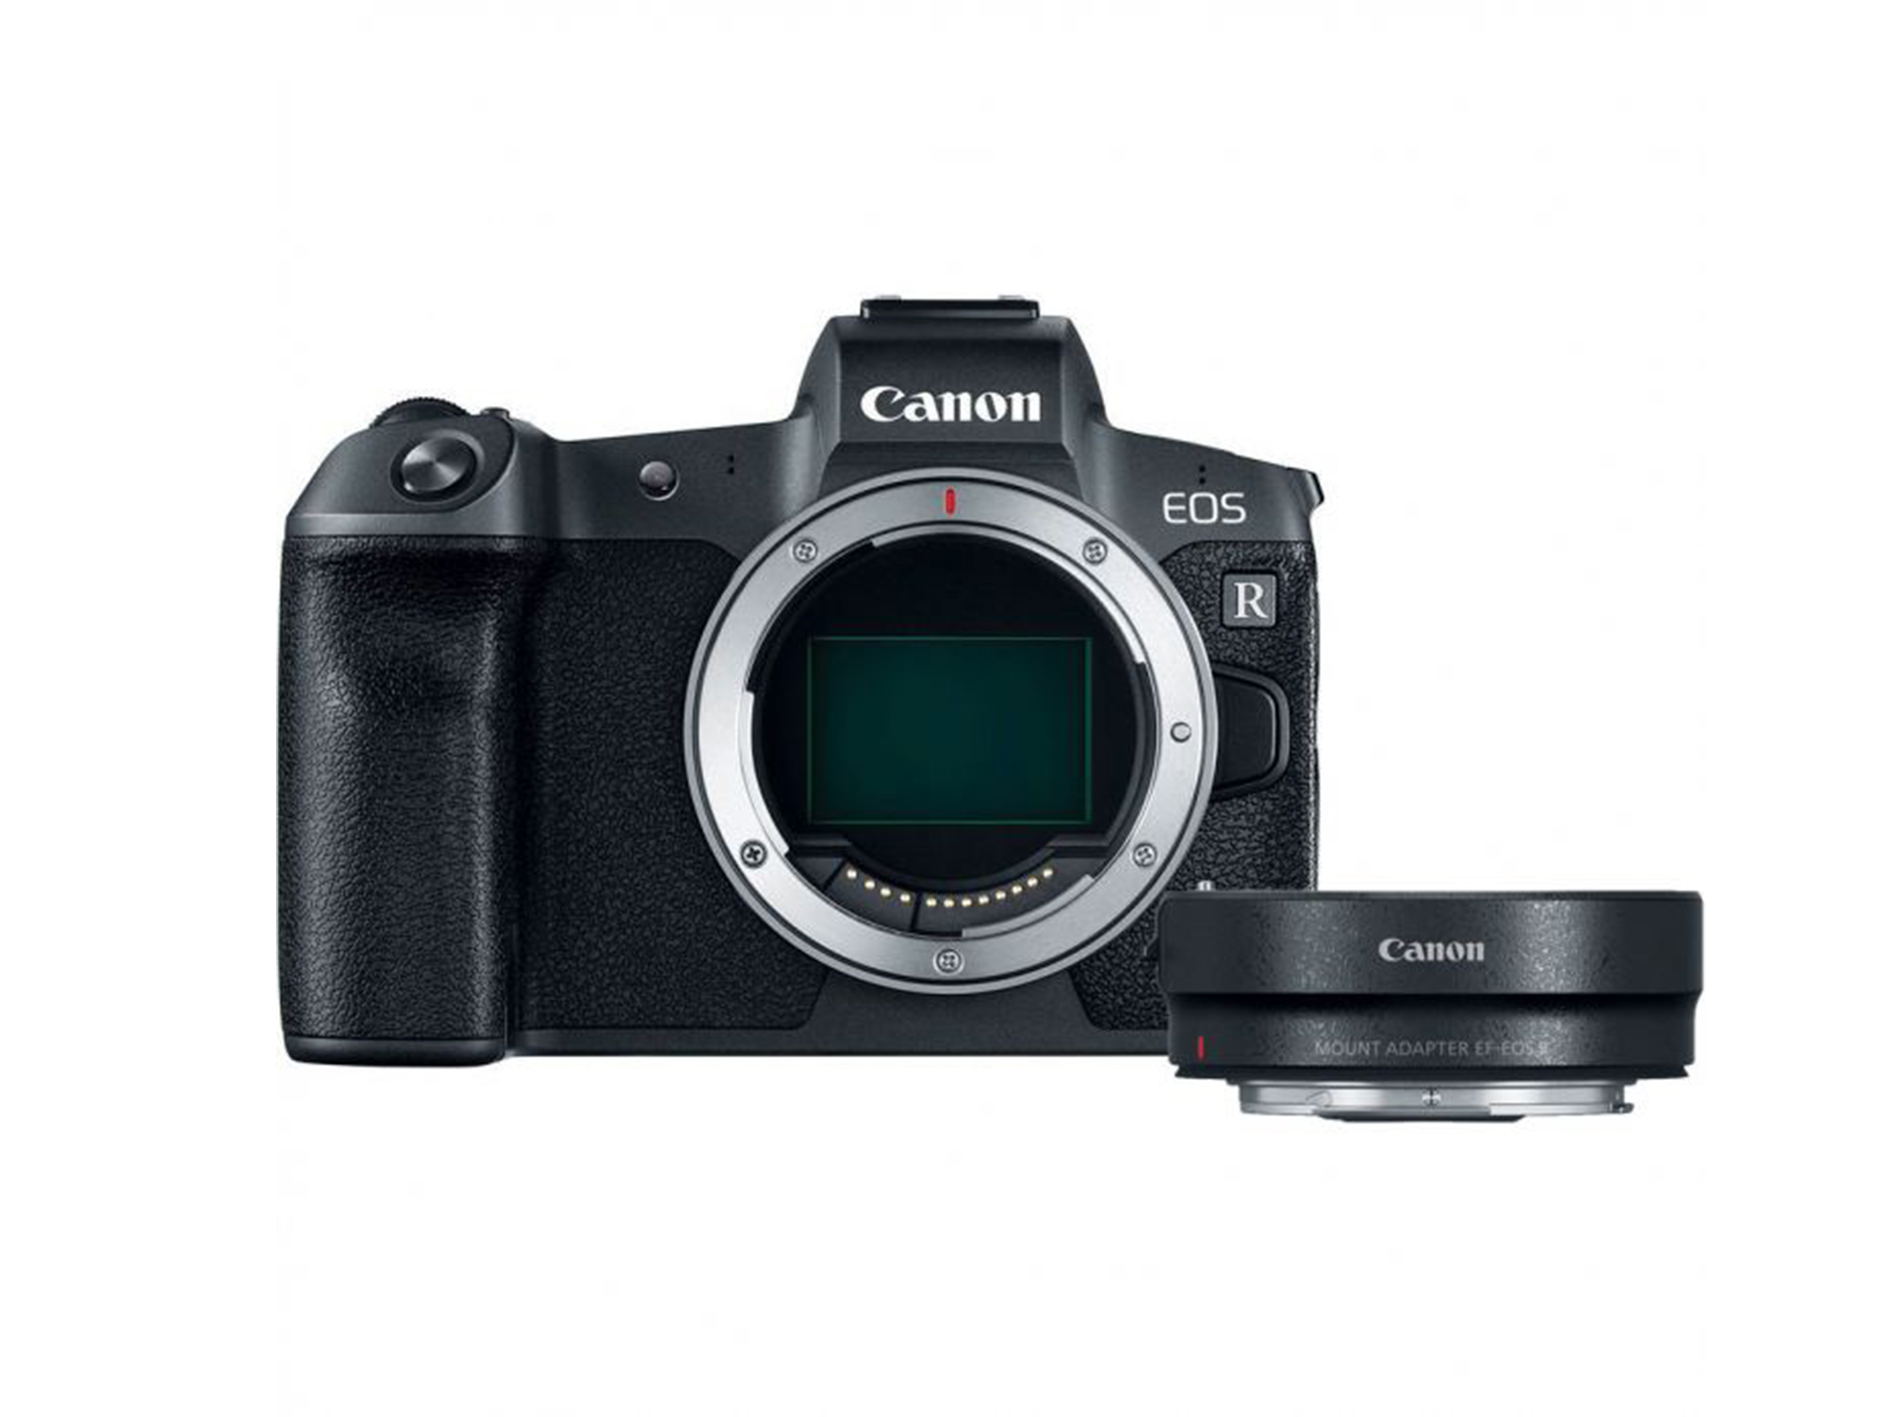 Canon EOS R có thêm 3 lựa chọn mới về ống kính: IRIX 11mm f/4, 15mm f/2.4 và 150mm f/2.8 1:1 Macro